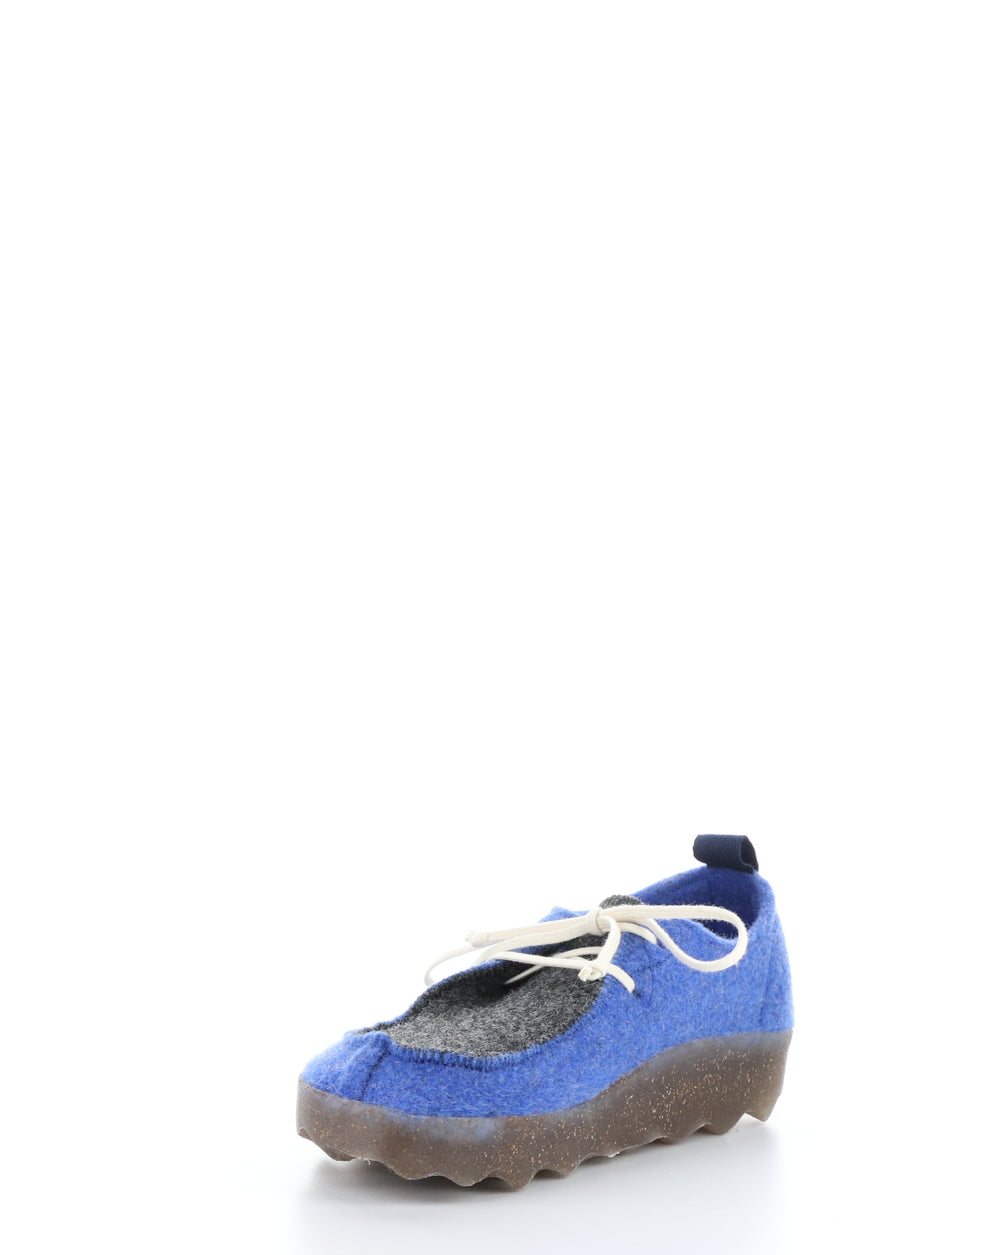 CHAT063ASP Blue Lace-up Shoes